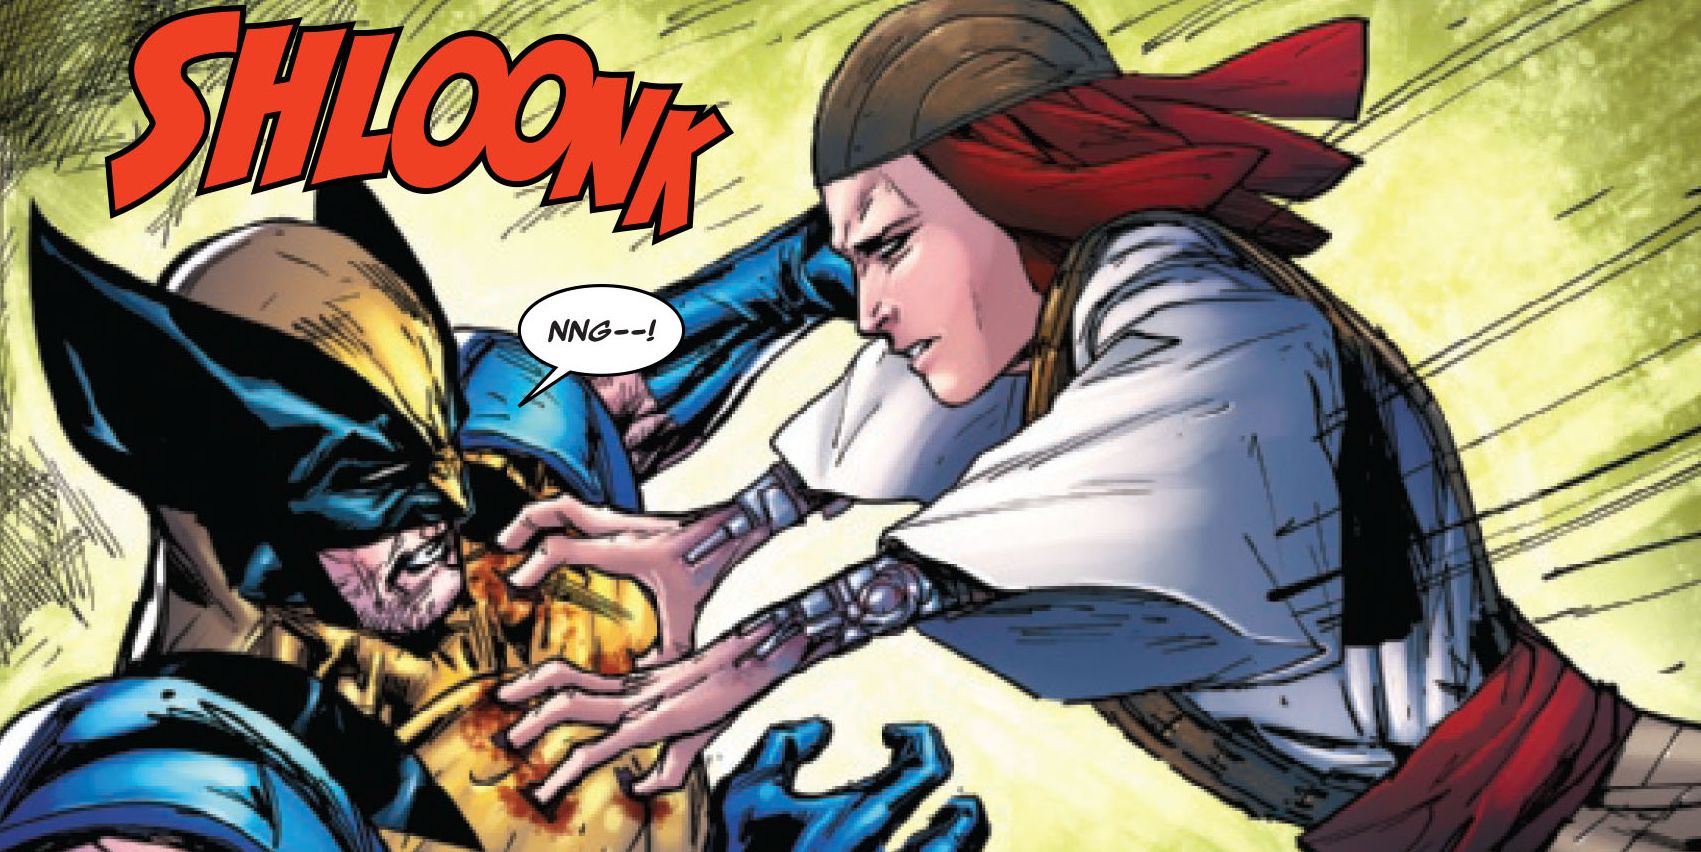 Laydy Deathstrike stabs Wolverine